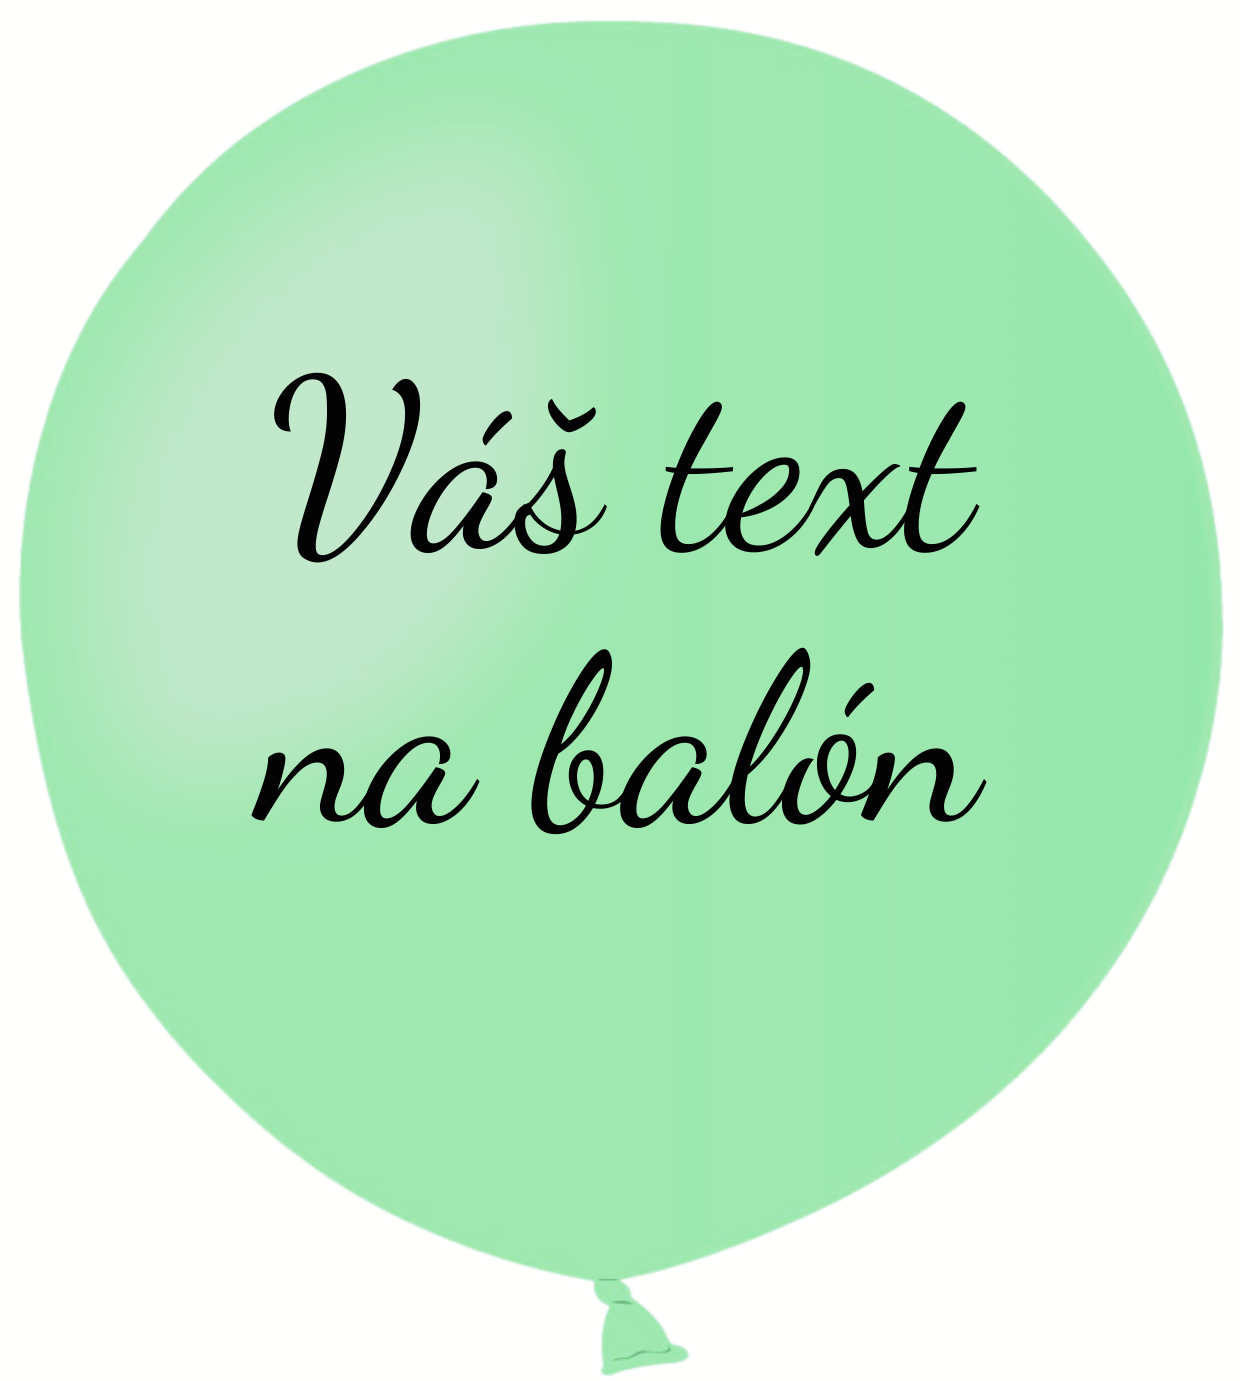 Personal Balón s textem - Zelená máta 80 cm